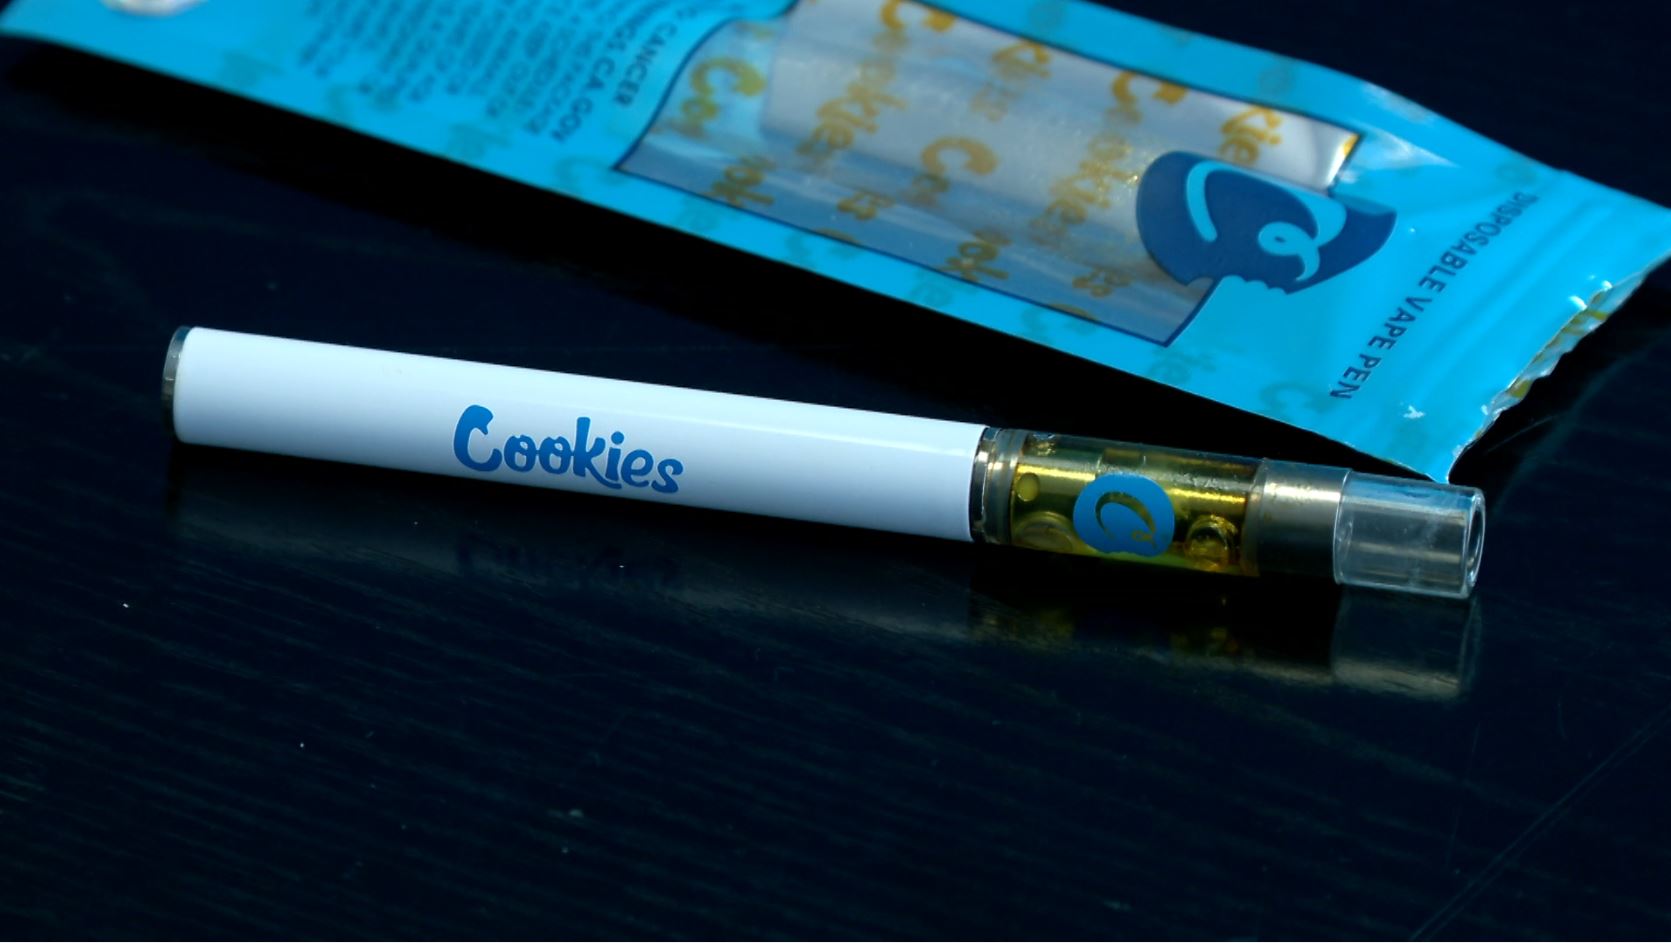 Wax pen: Cannabis derivatives are a public health concern